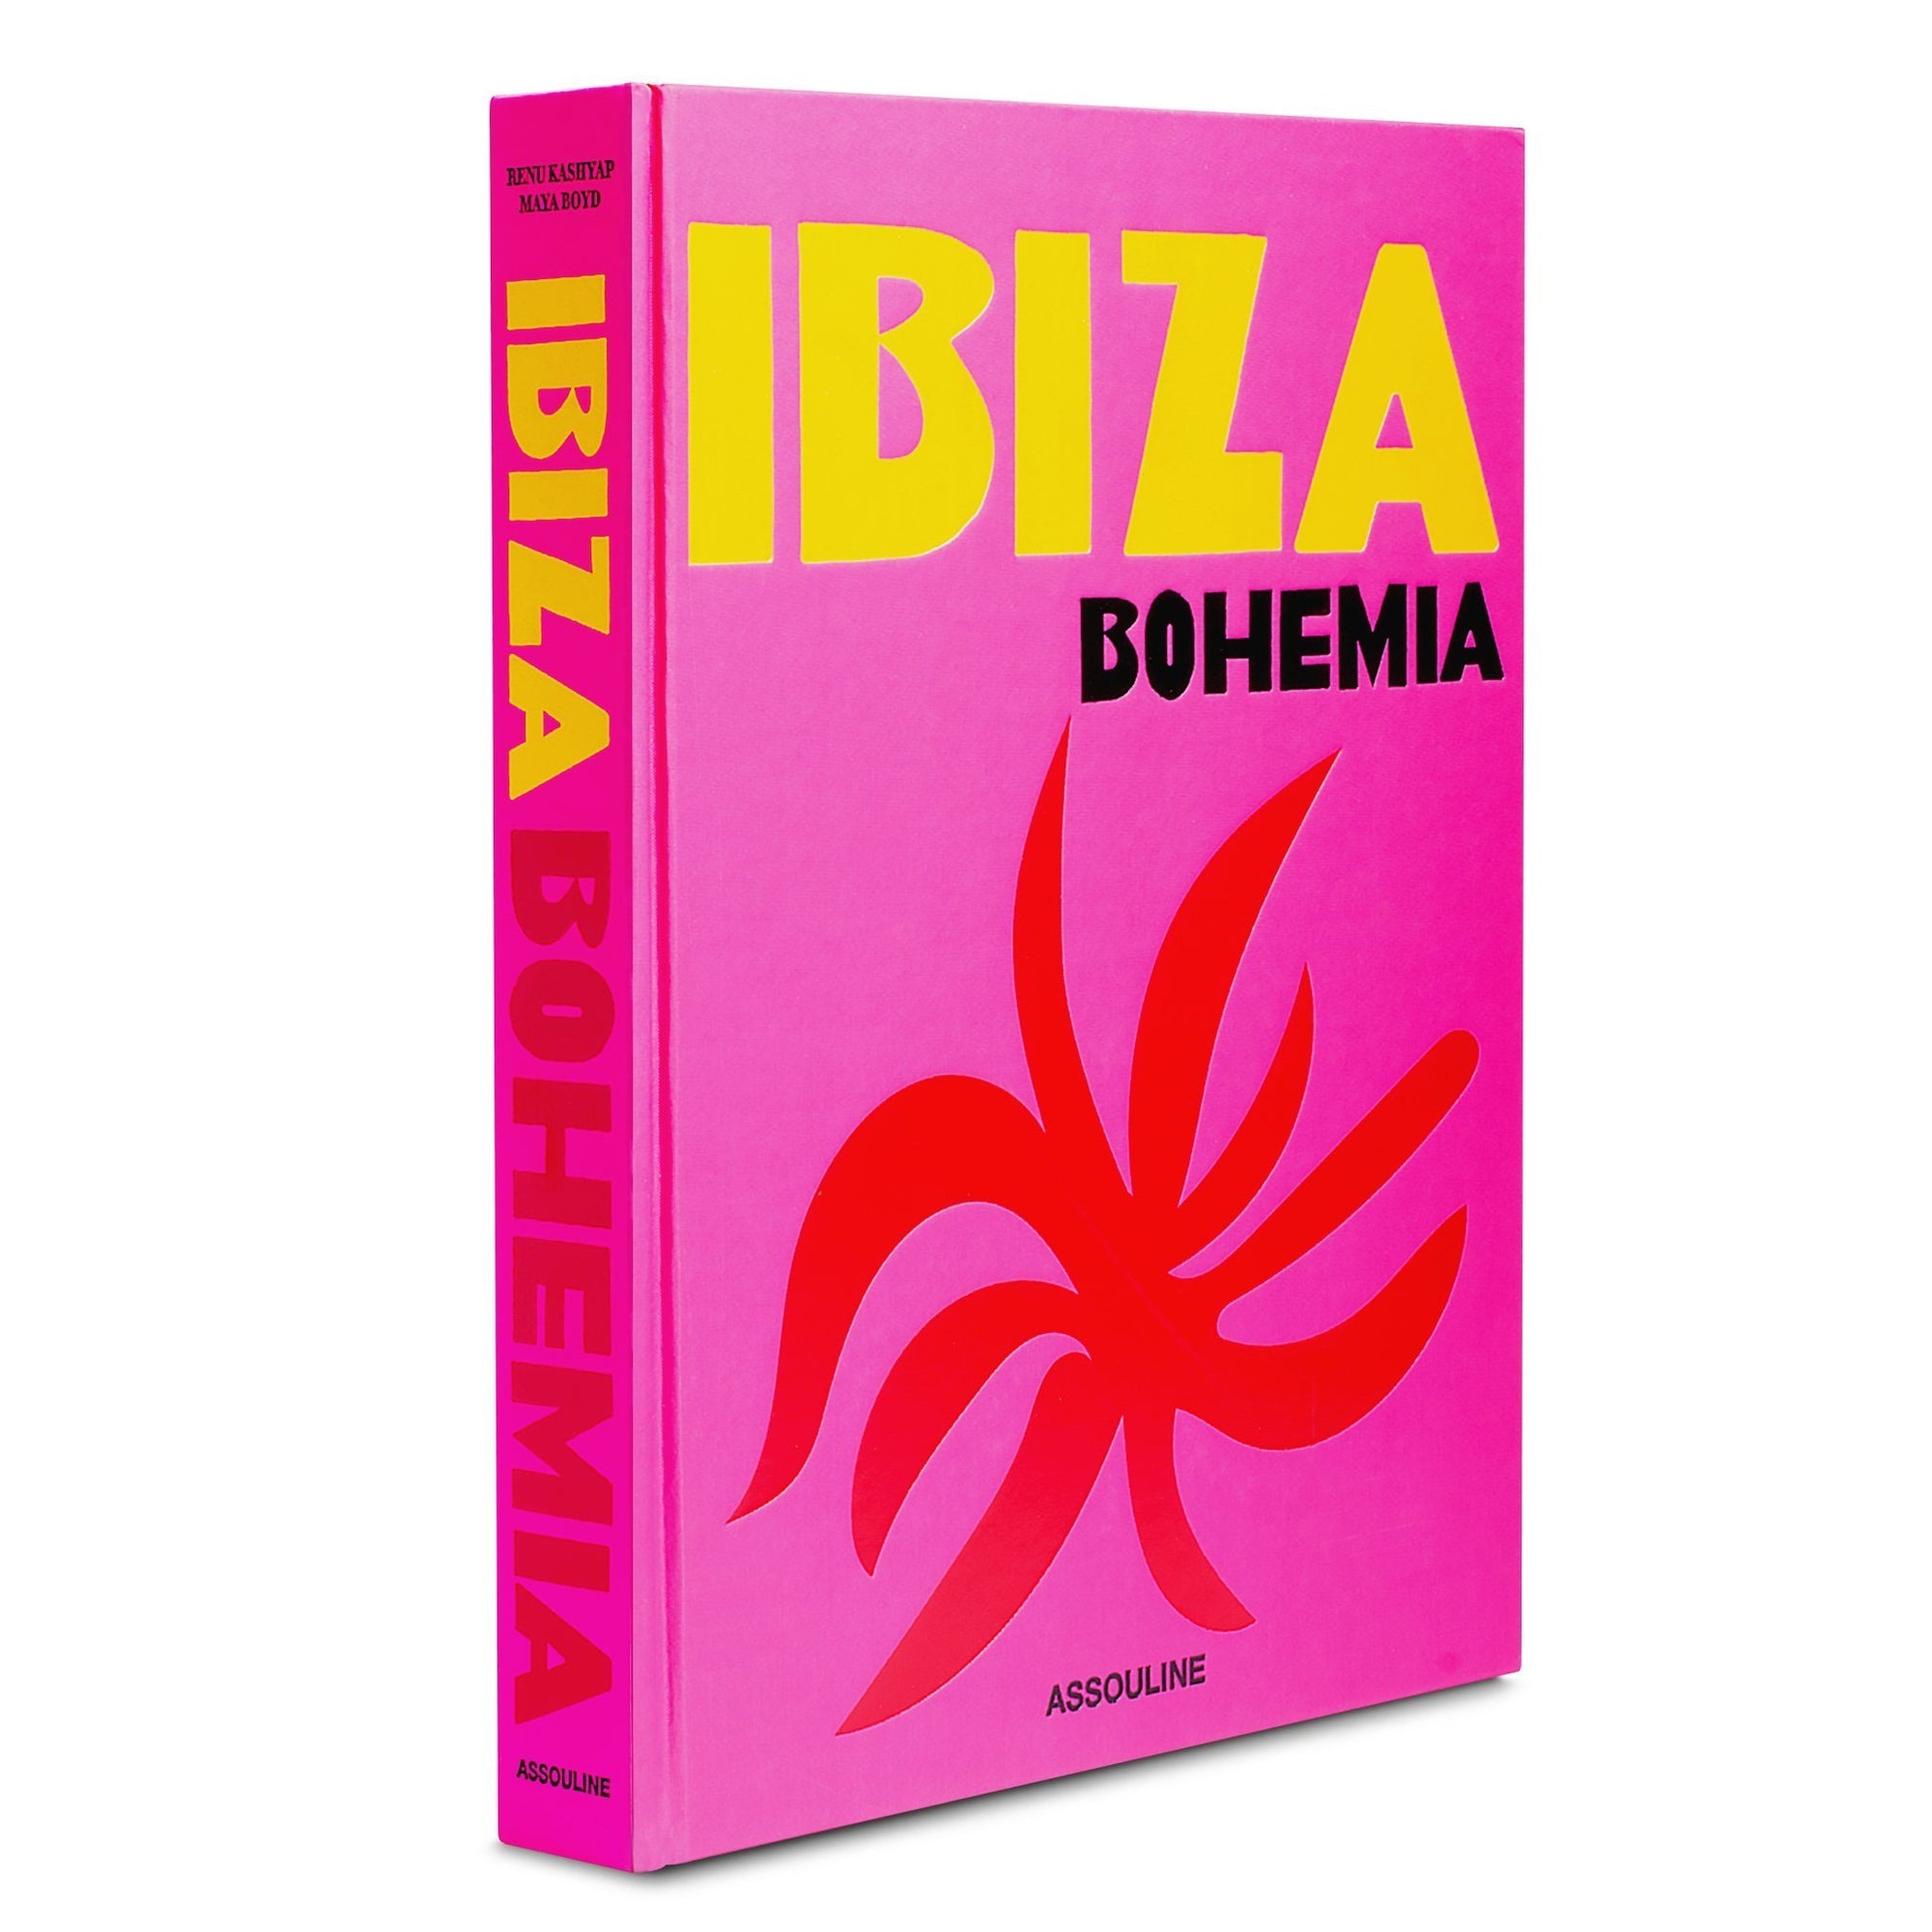 Ibiza Bohemia (Assouline), written and signed by Maya Boyd